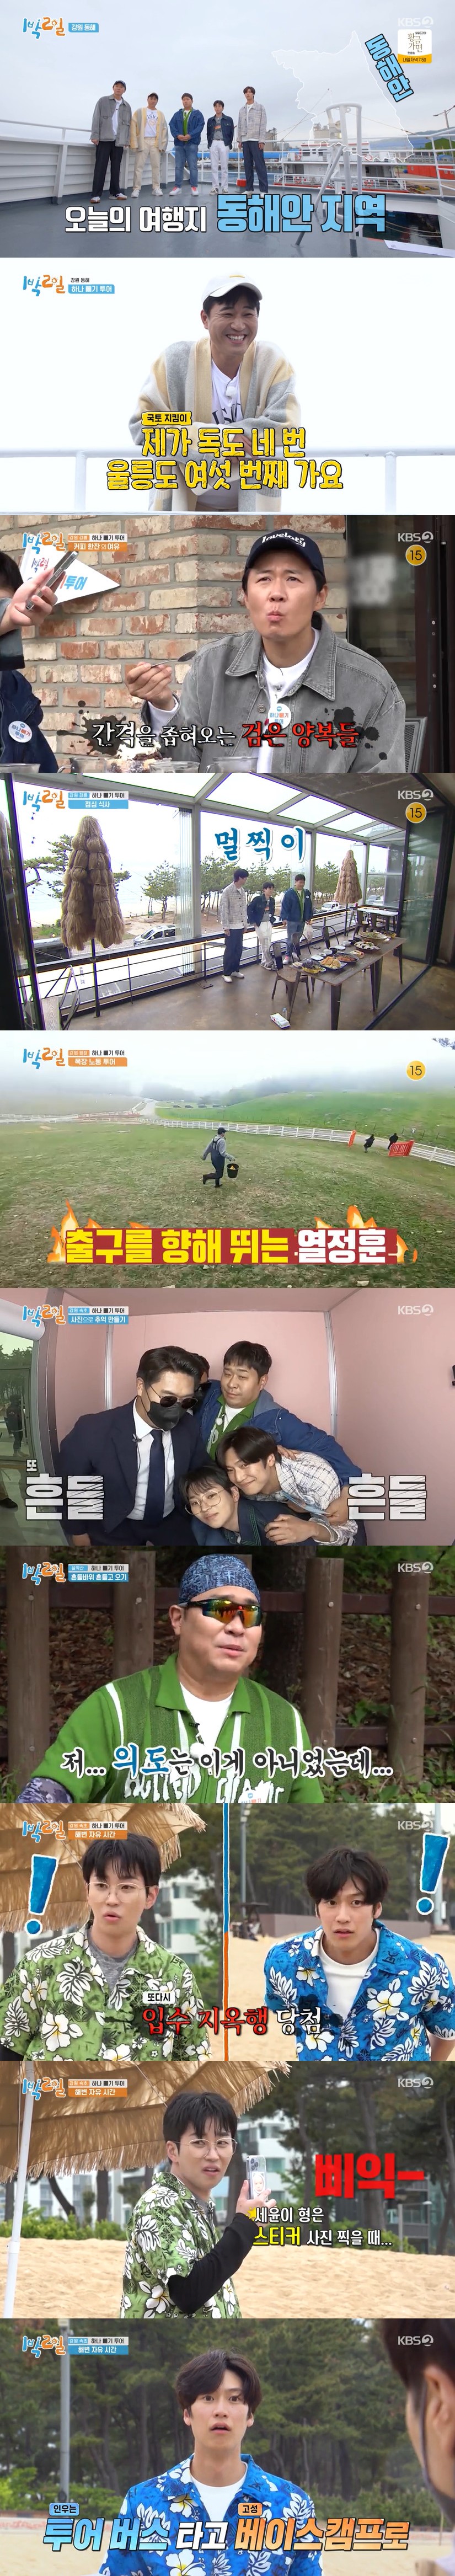 ▲ KBS2 예능 '1박 2일 시즌4' 방송 화면. 제공| KBS